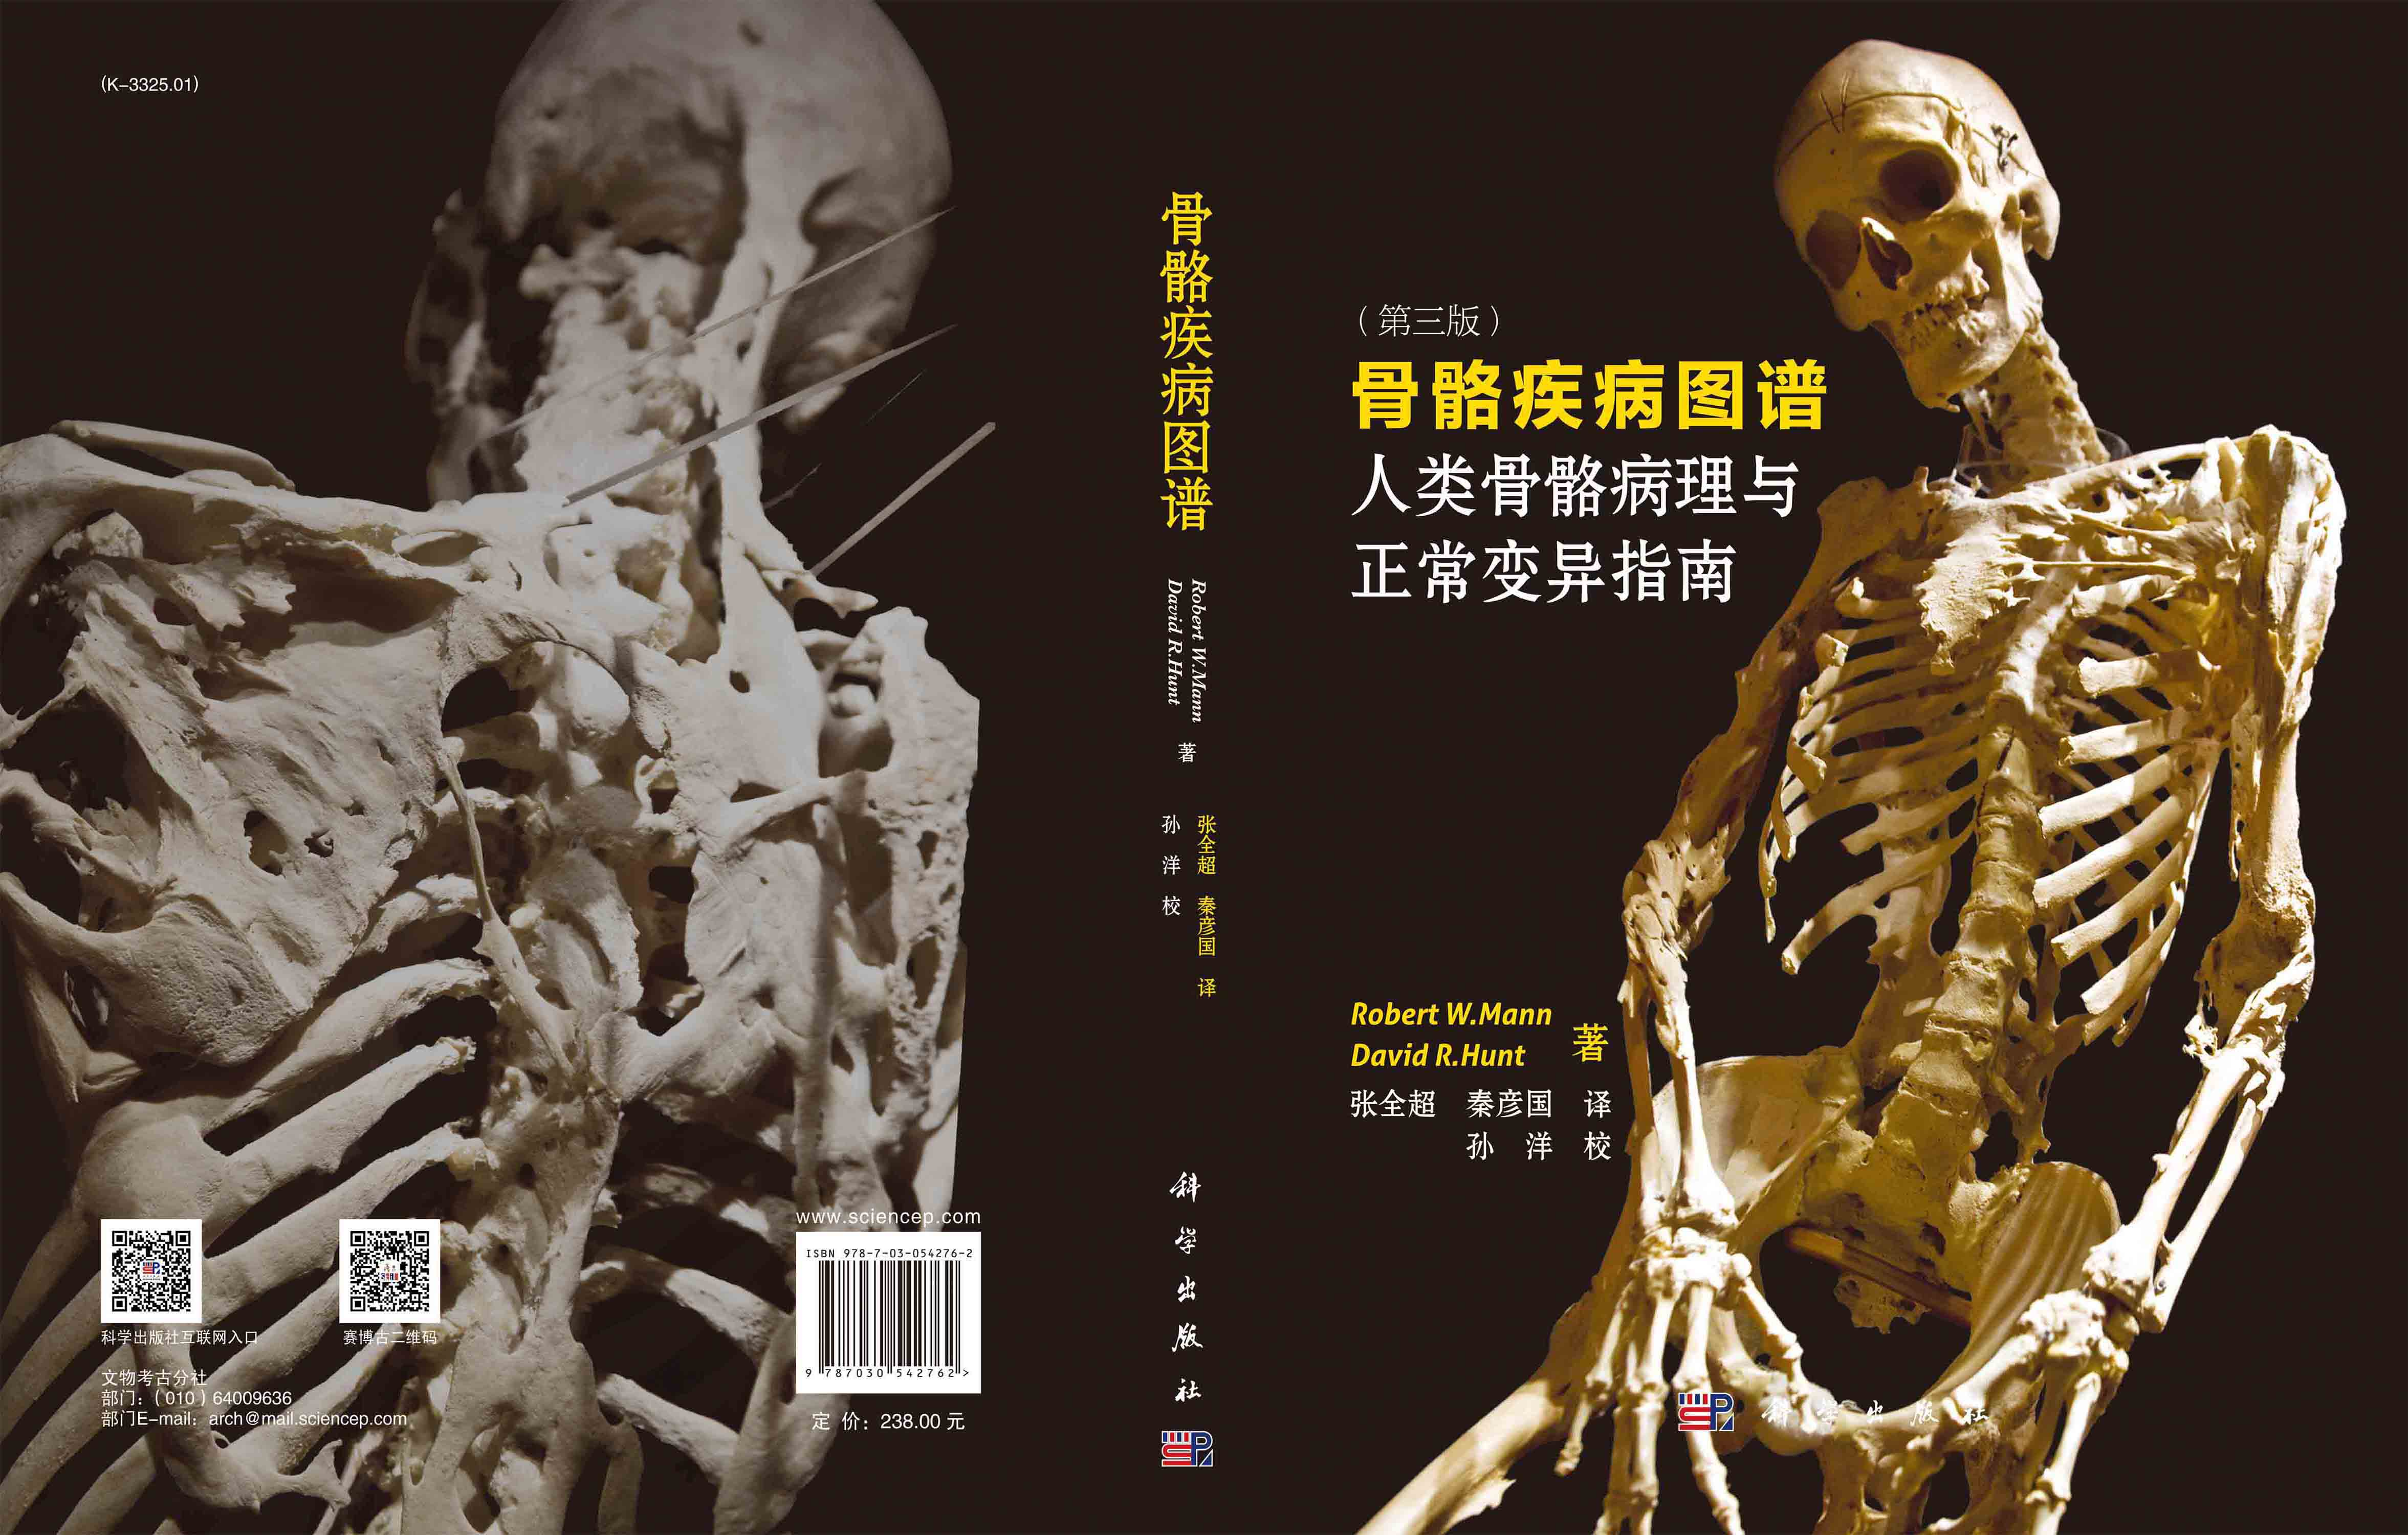 骨骼疾病图谱：人类骨骼病理与正常变异指南：原书第三版